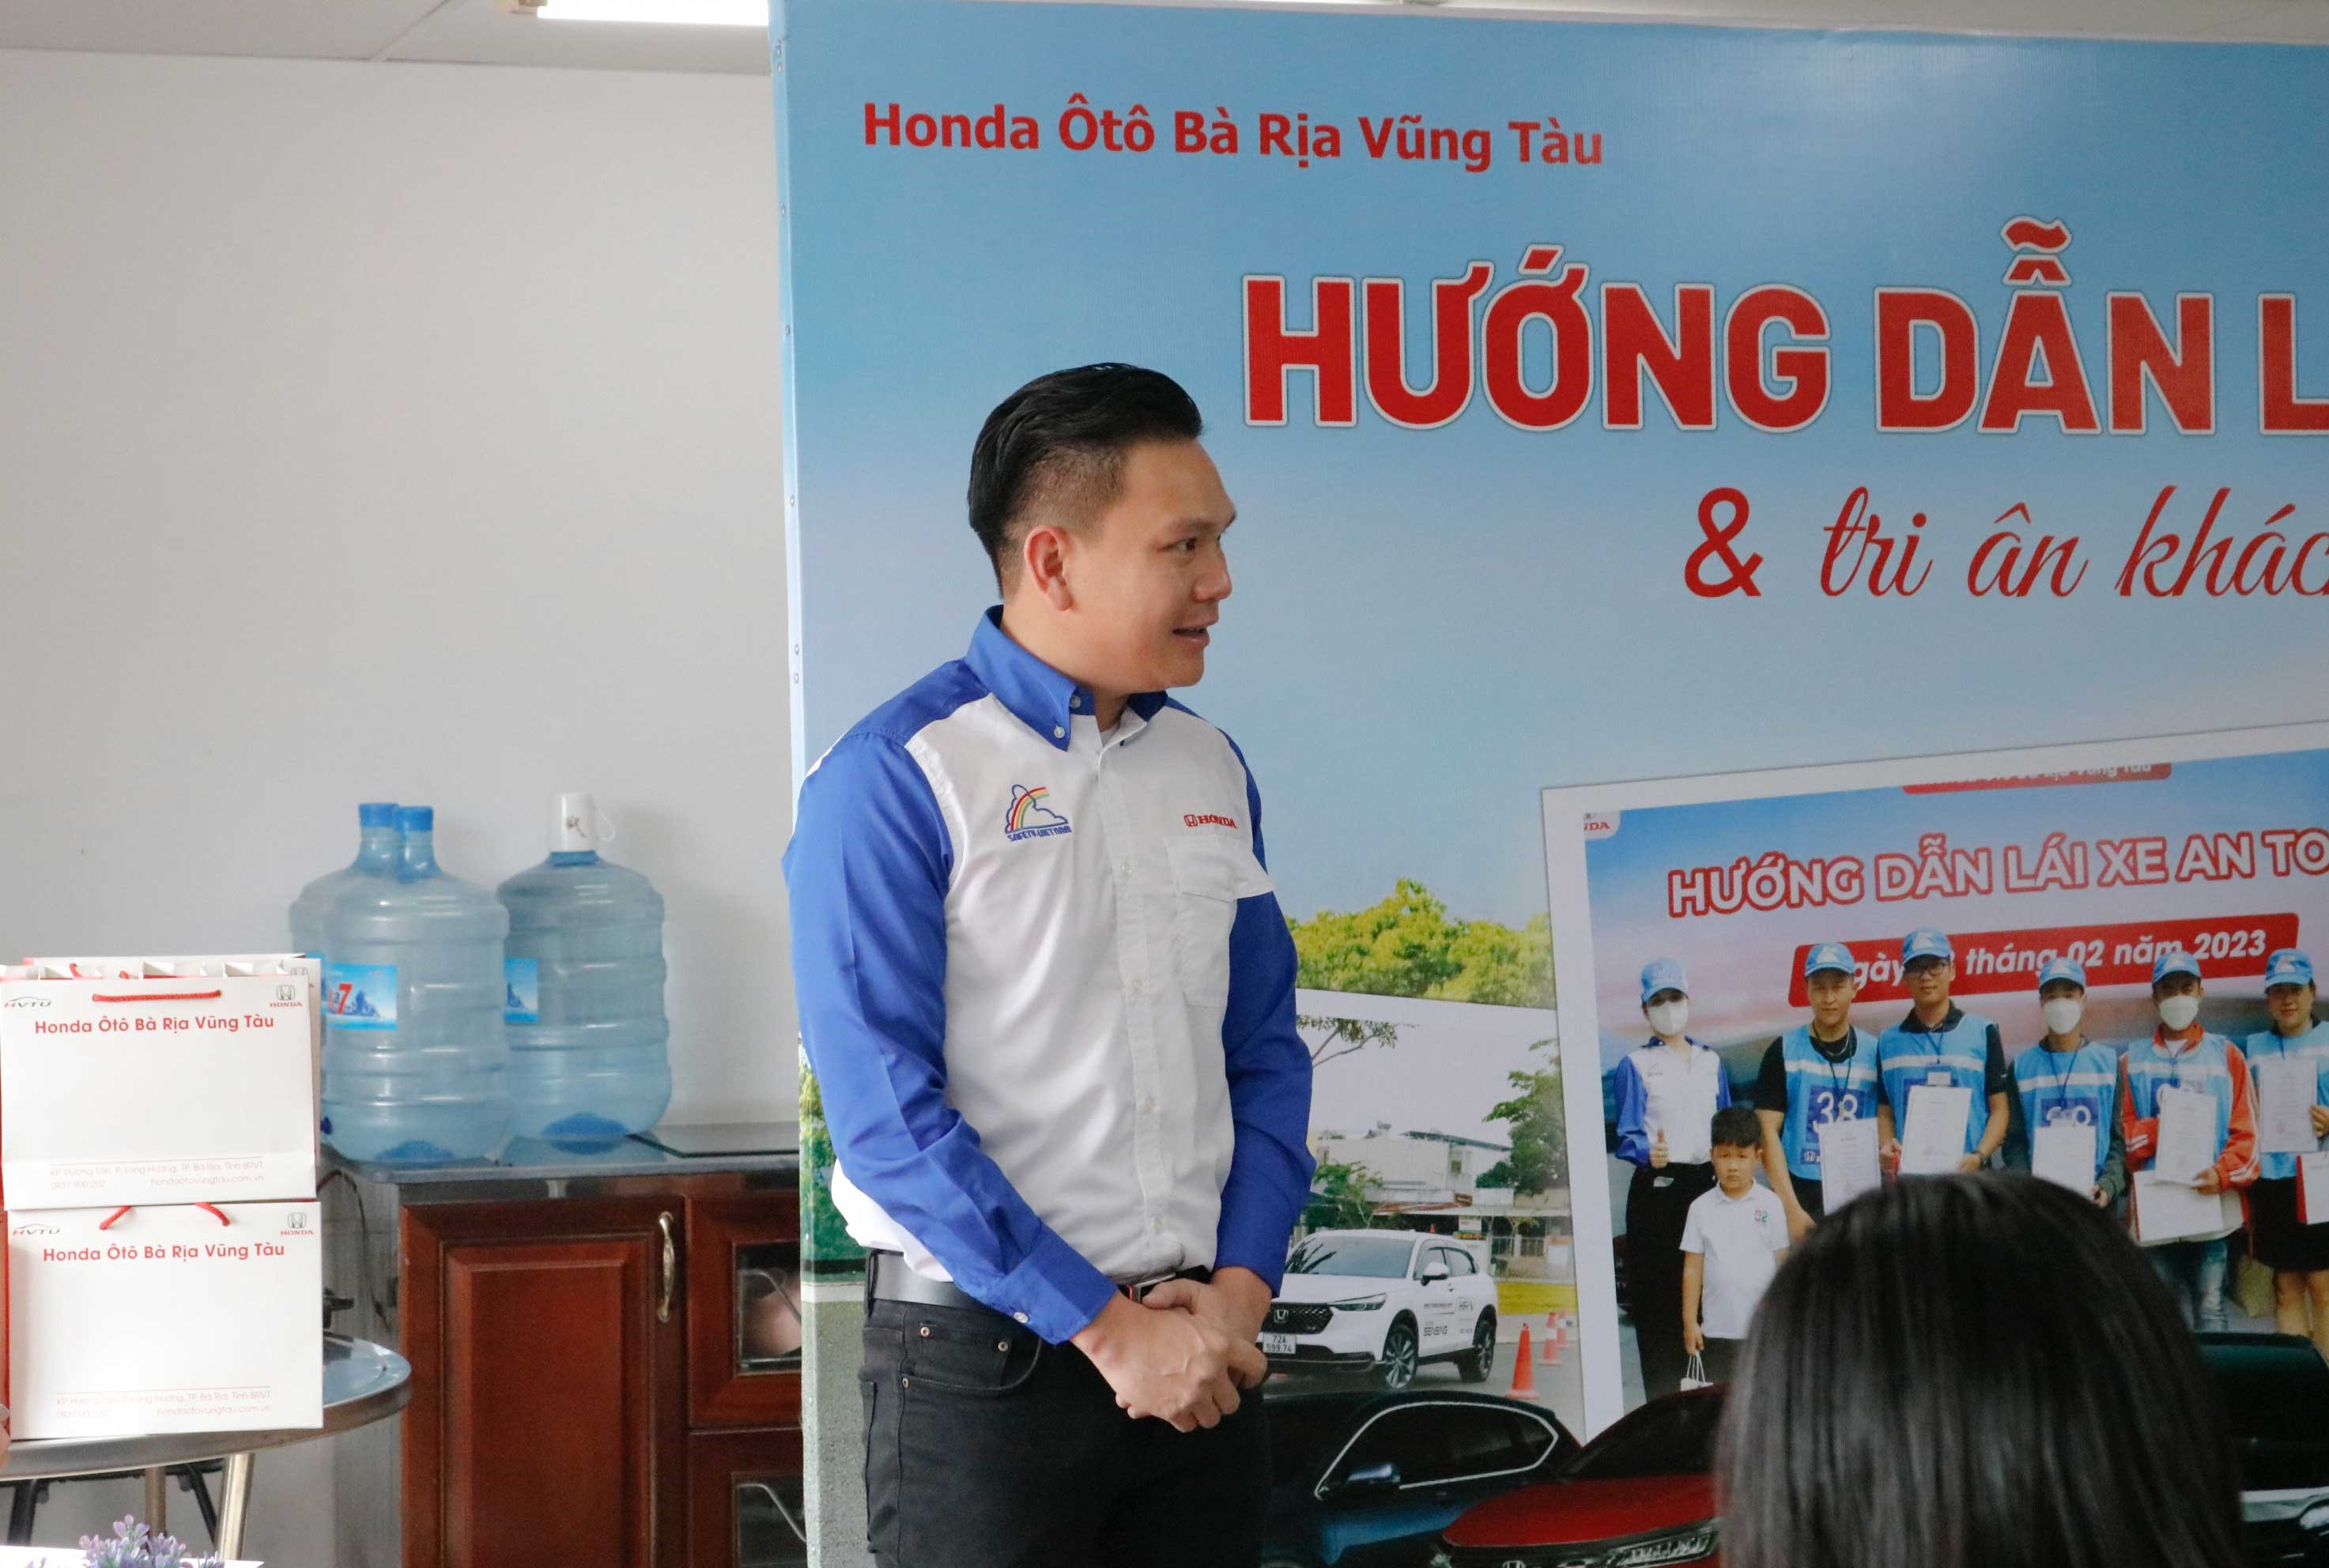 Đại diện Honda Ôtô Bà Rịa-Vũng Tàu phát biểu khai mạc chương trình.